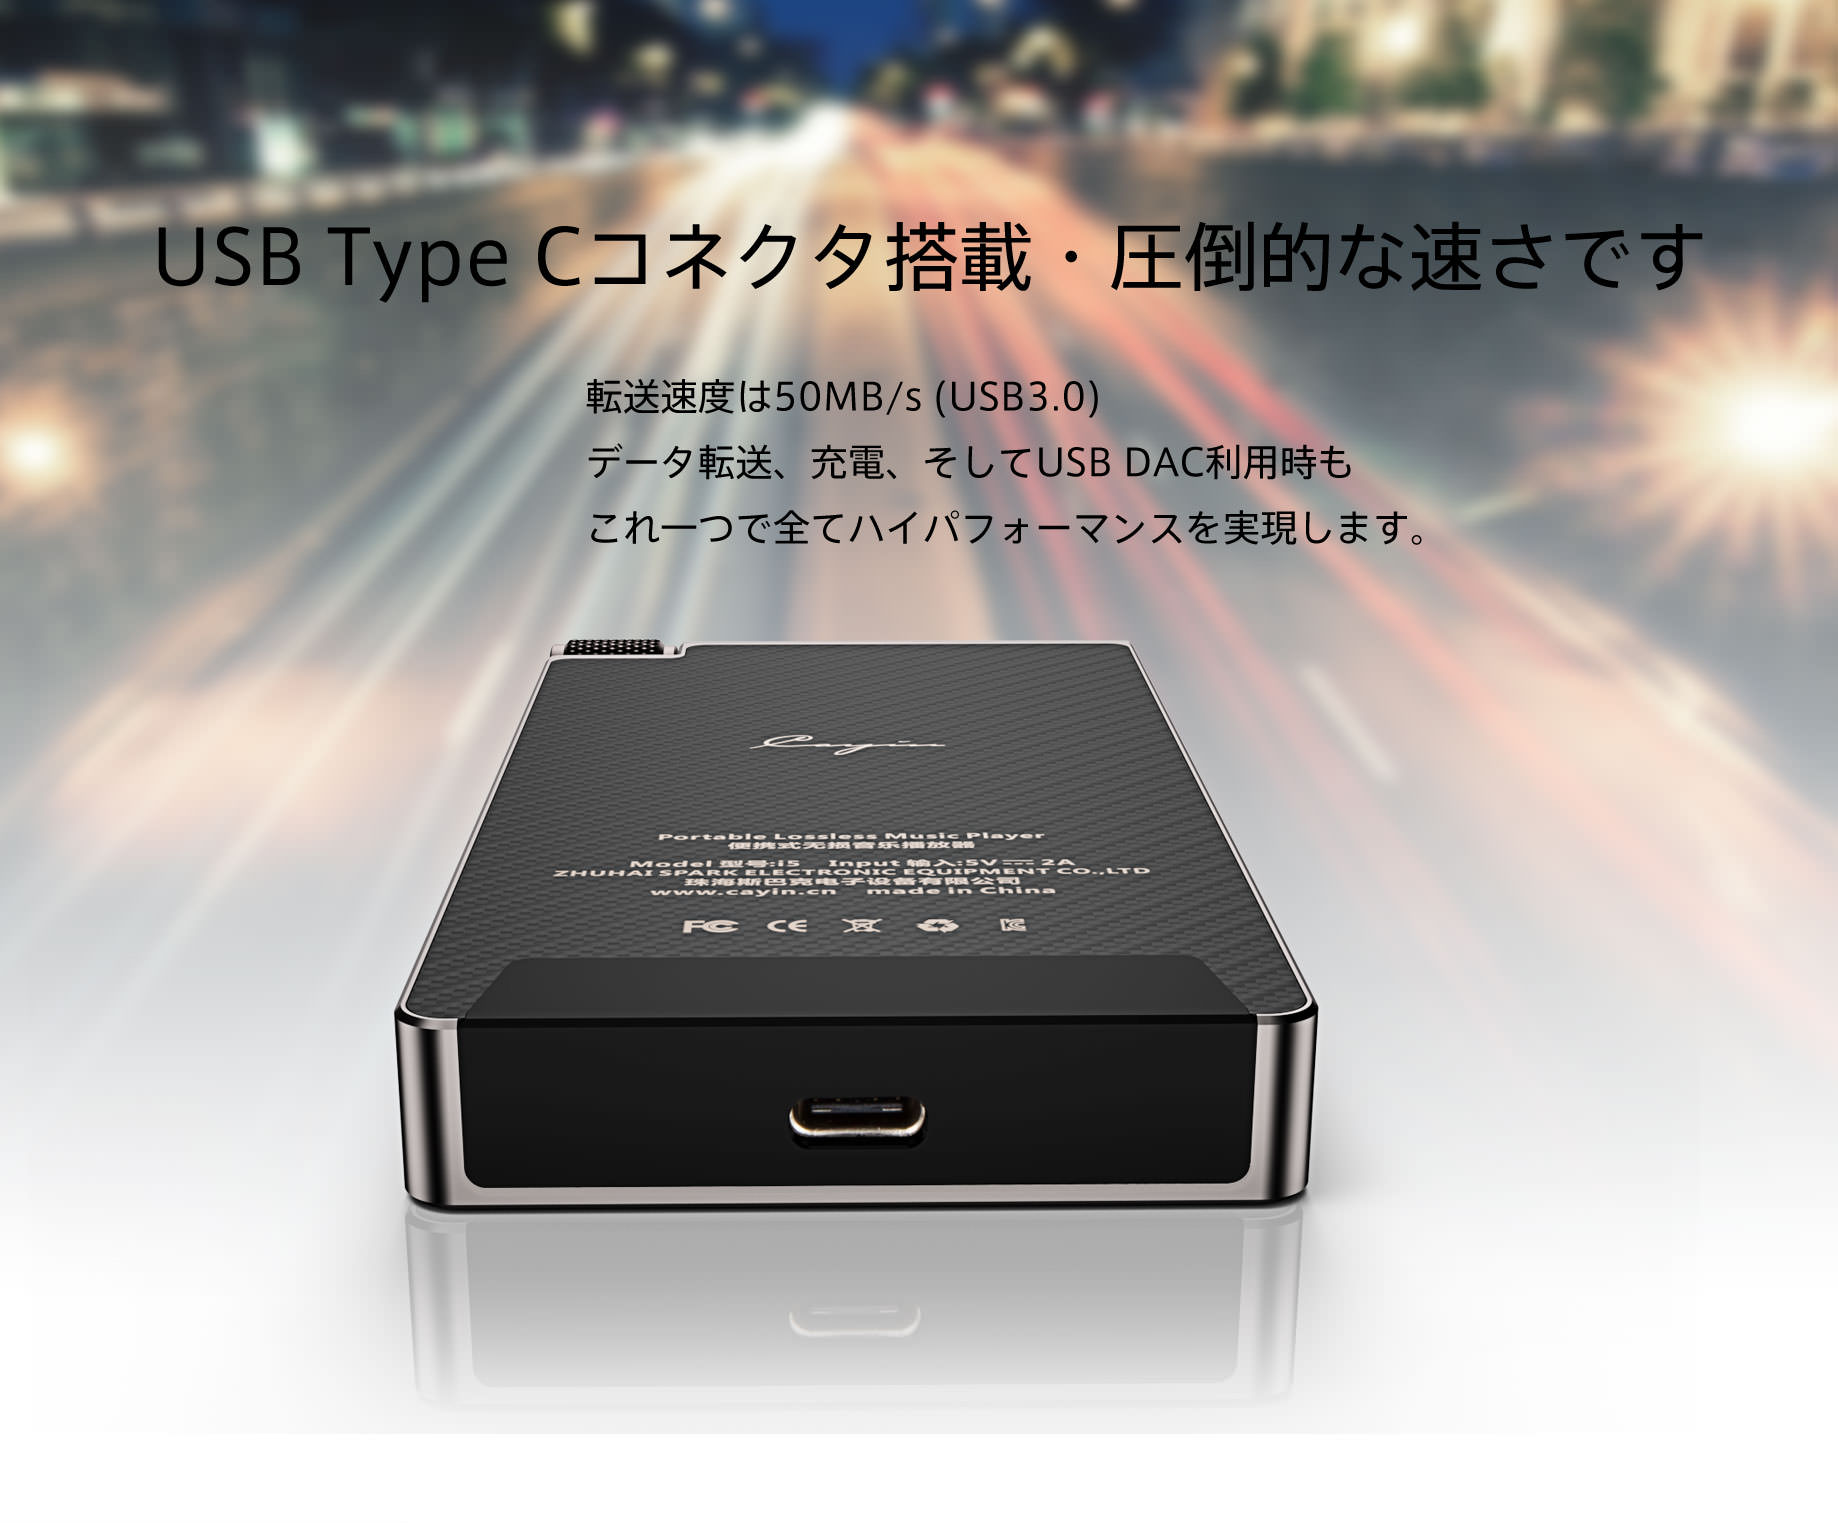 USB Type Cコネクタ搭載・圧倒的な速さです。
転送速度は50MB/s (USB3.0)
データ転送、充電、そしてUSB DAC利用時もこれ一つで全てハイパフォーマンスを実現します。